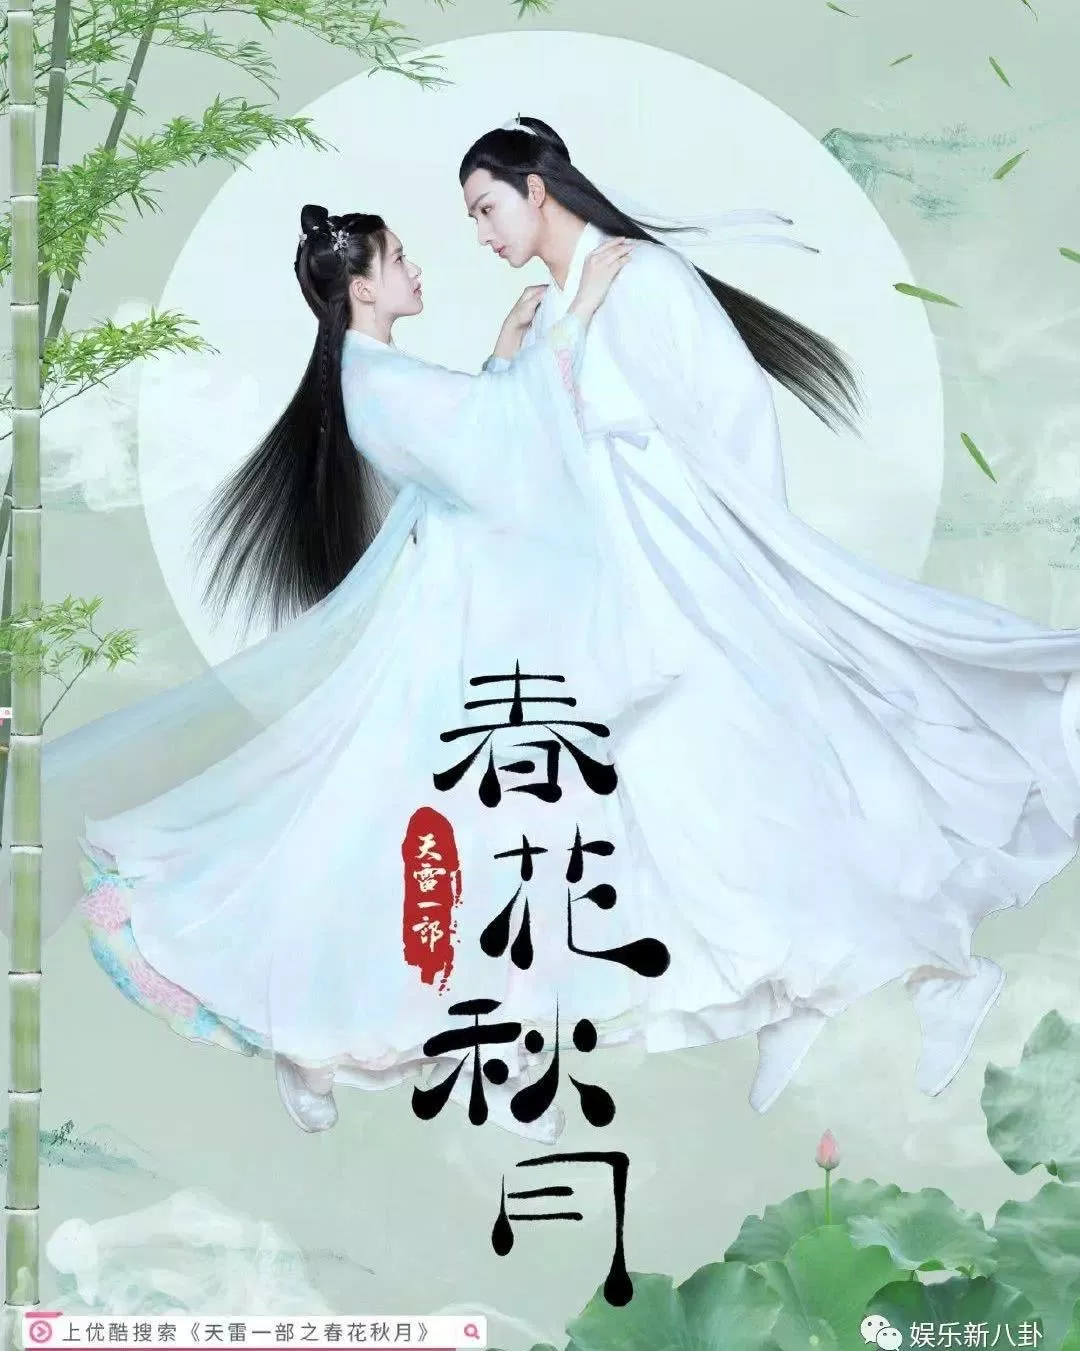 Poster phim Xuân Hoa Thu Nguyệt. (Ảnh: Internet)